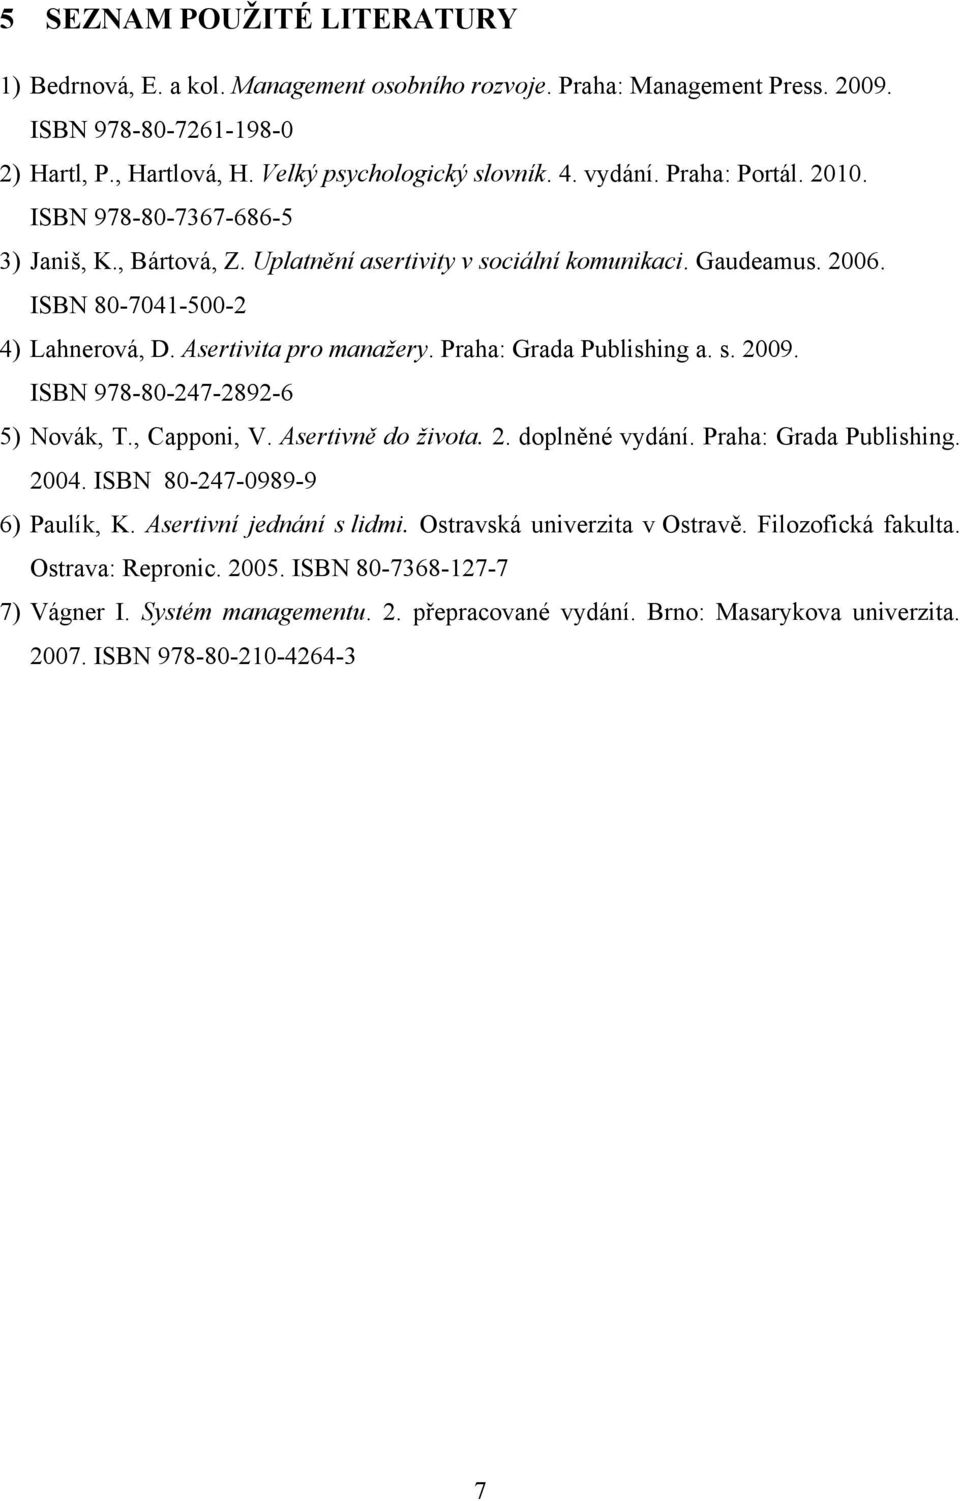 Praha: Grada Publishing a. s. 2009. ISBN 978-80-247-2892-6 5) Novák, T., Capponi, V. Asertivně do života. 2. doplněné vydání. Praha: Grada Publishing. 2004. ISBN 80-247-0989-9 6) Paulík, K.